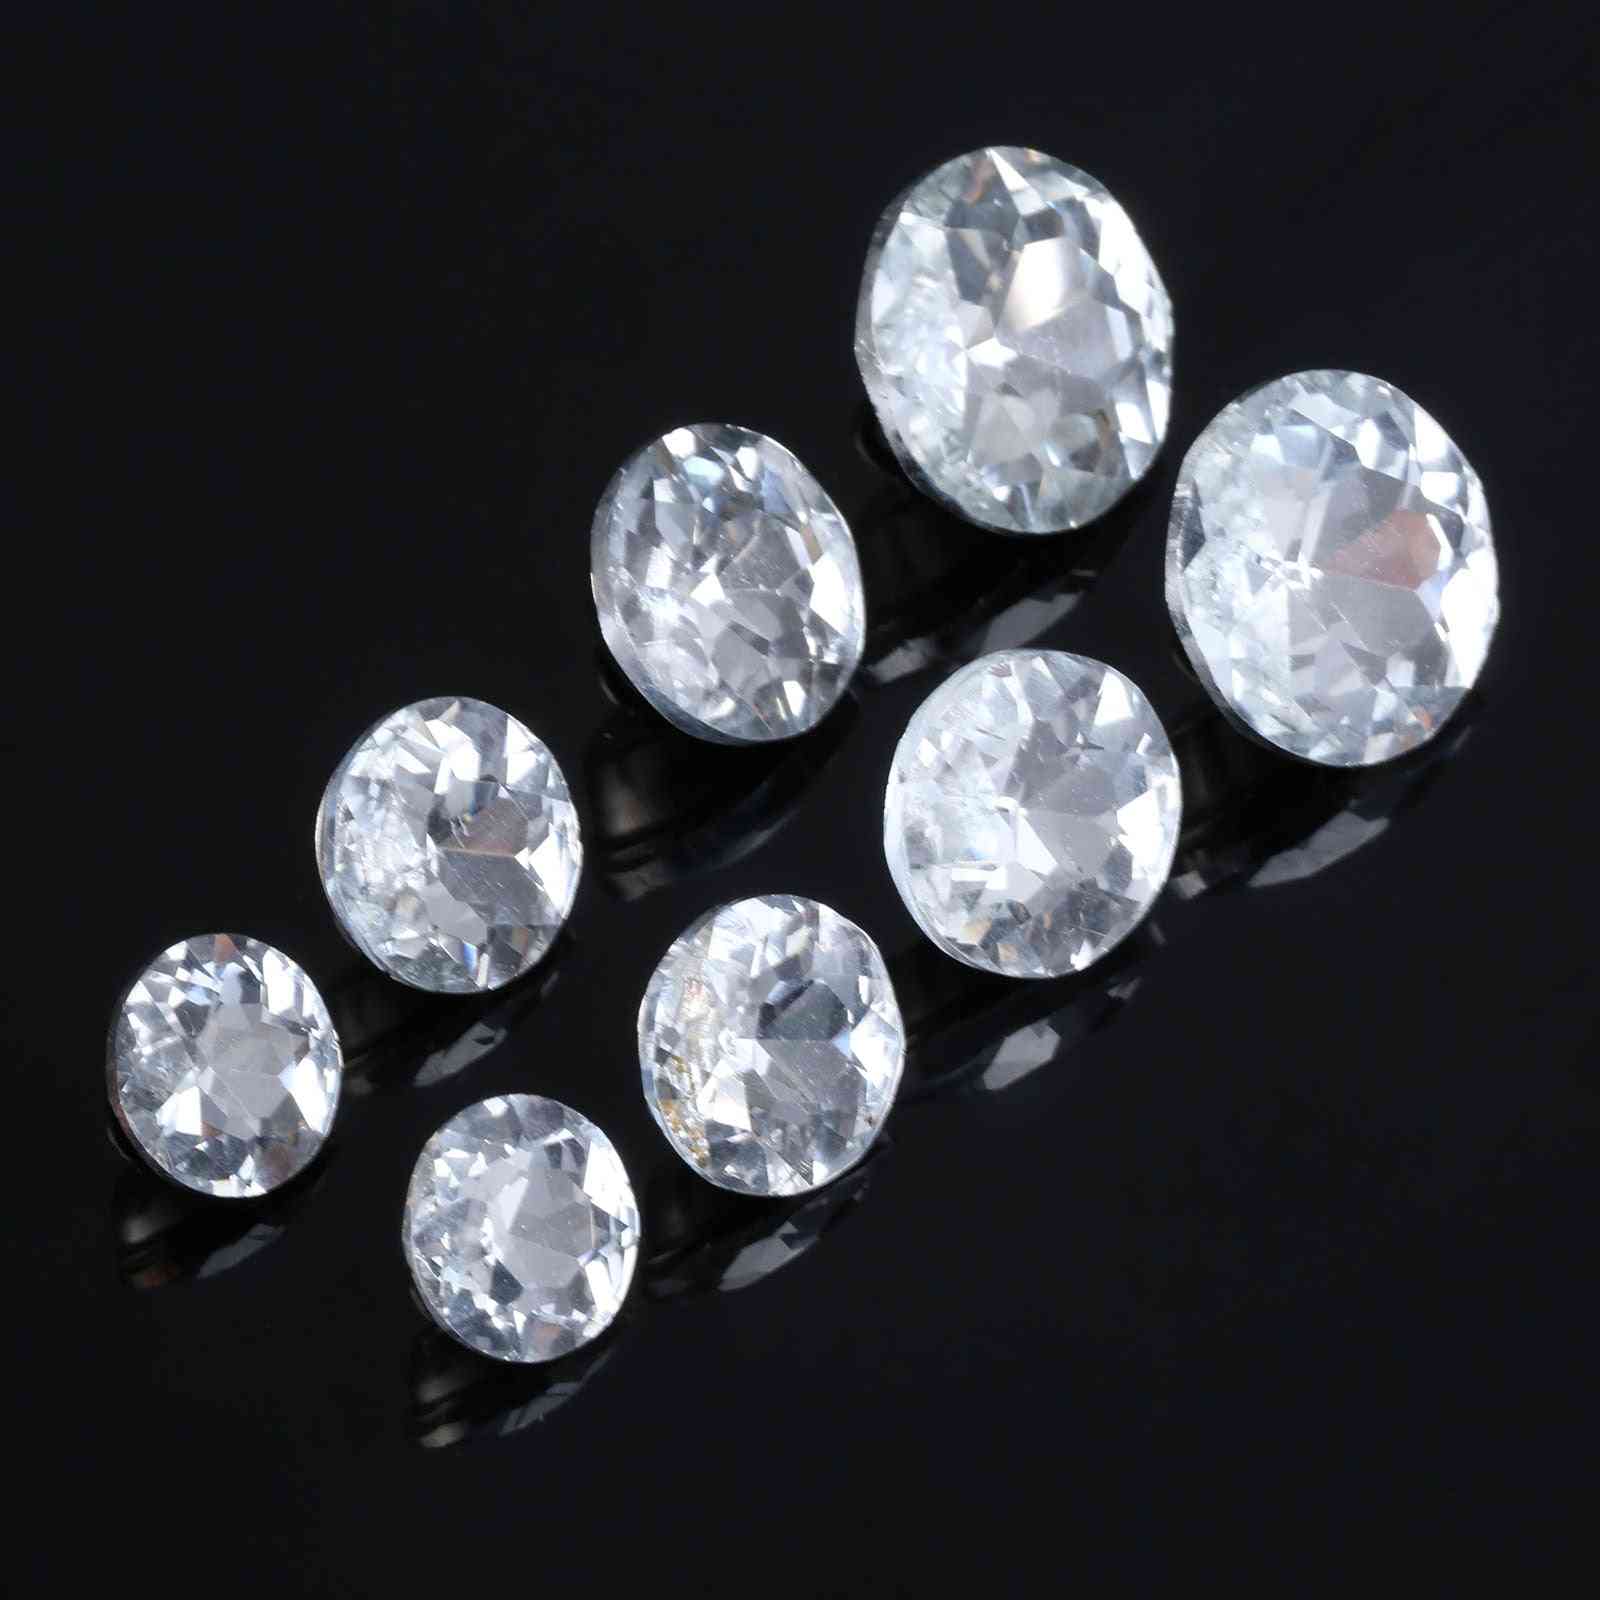 10pcs de boutons d'ameublement en verre cristal de diamant - 16mm